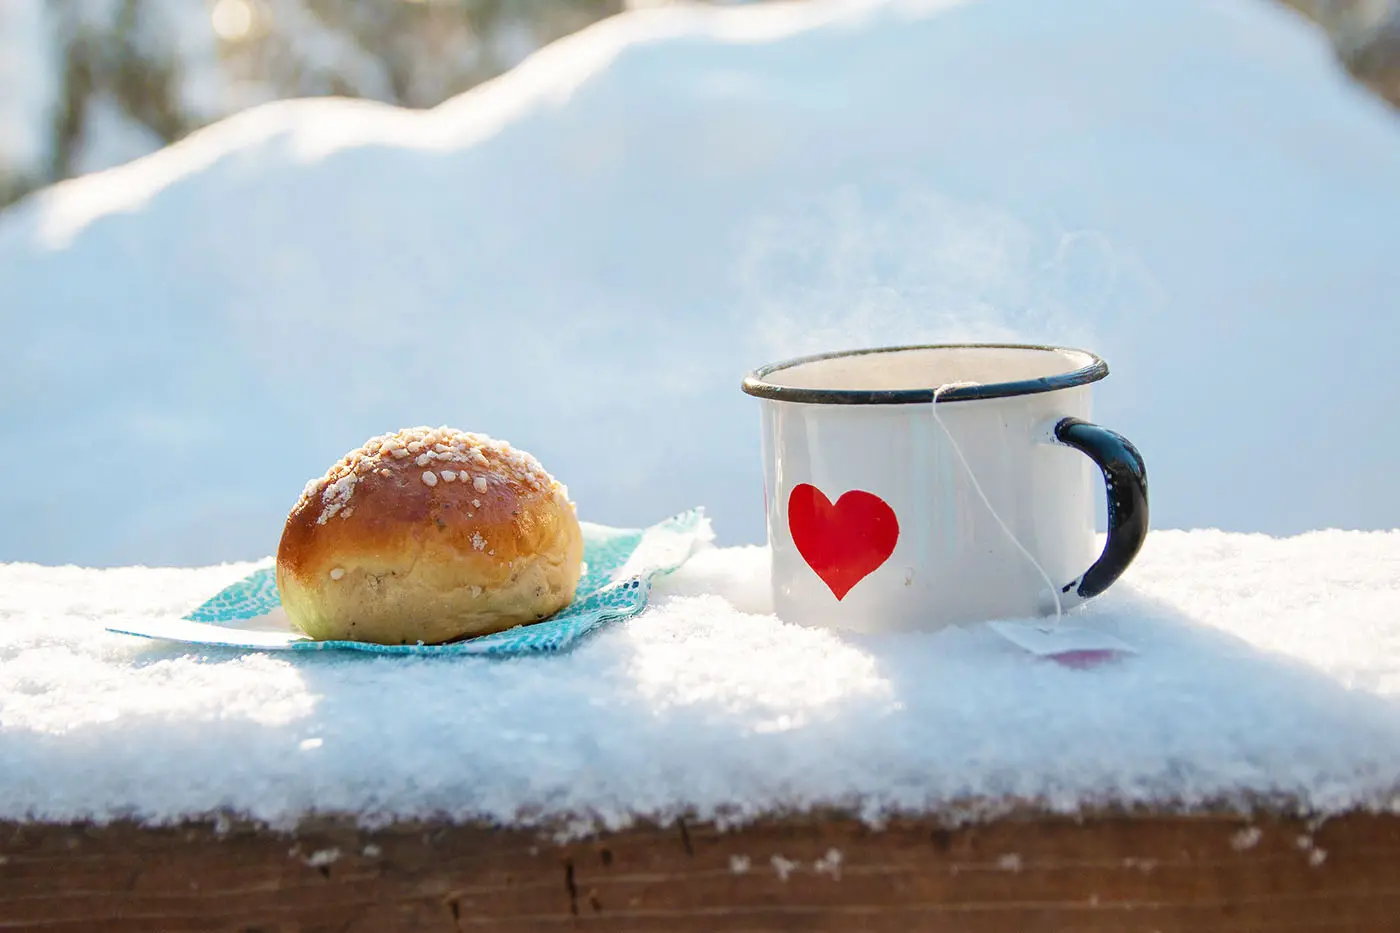 En bulle och en kopp rykande te, uppdukat på ett snöigt bord